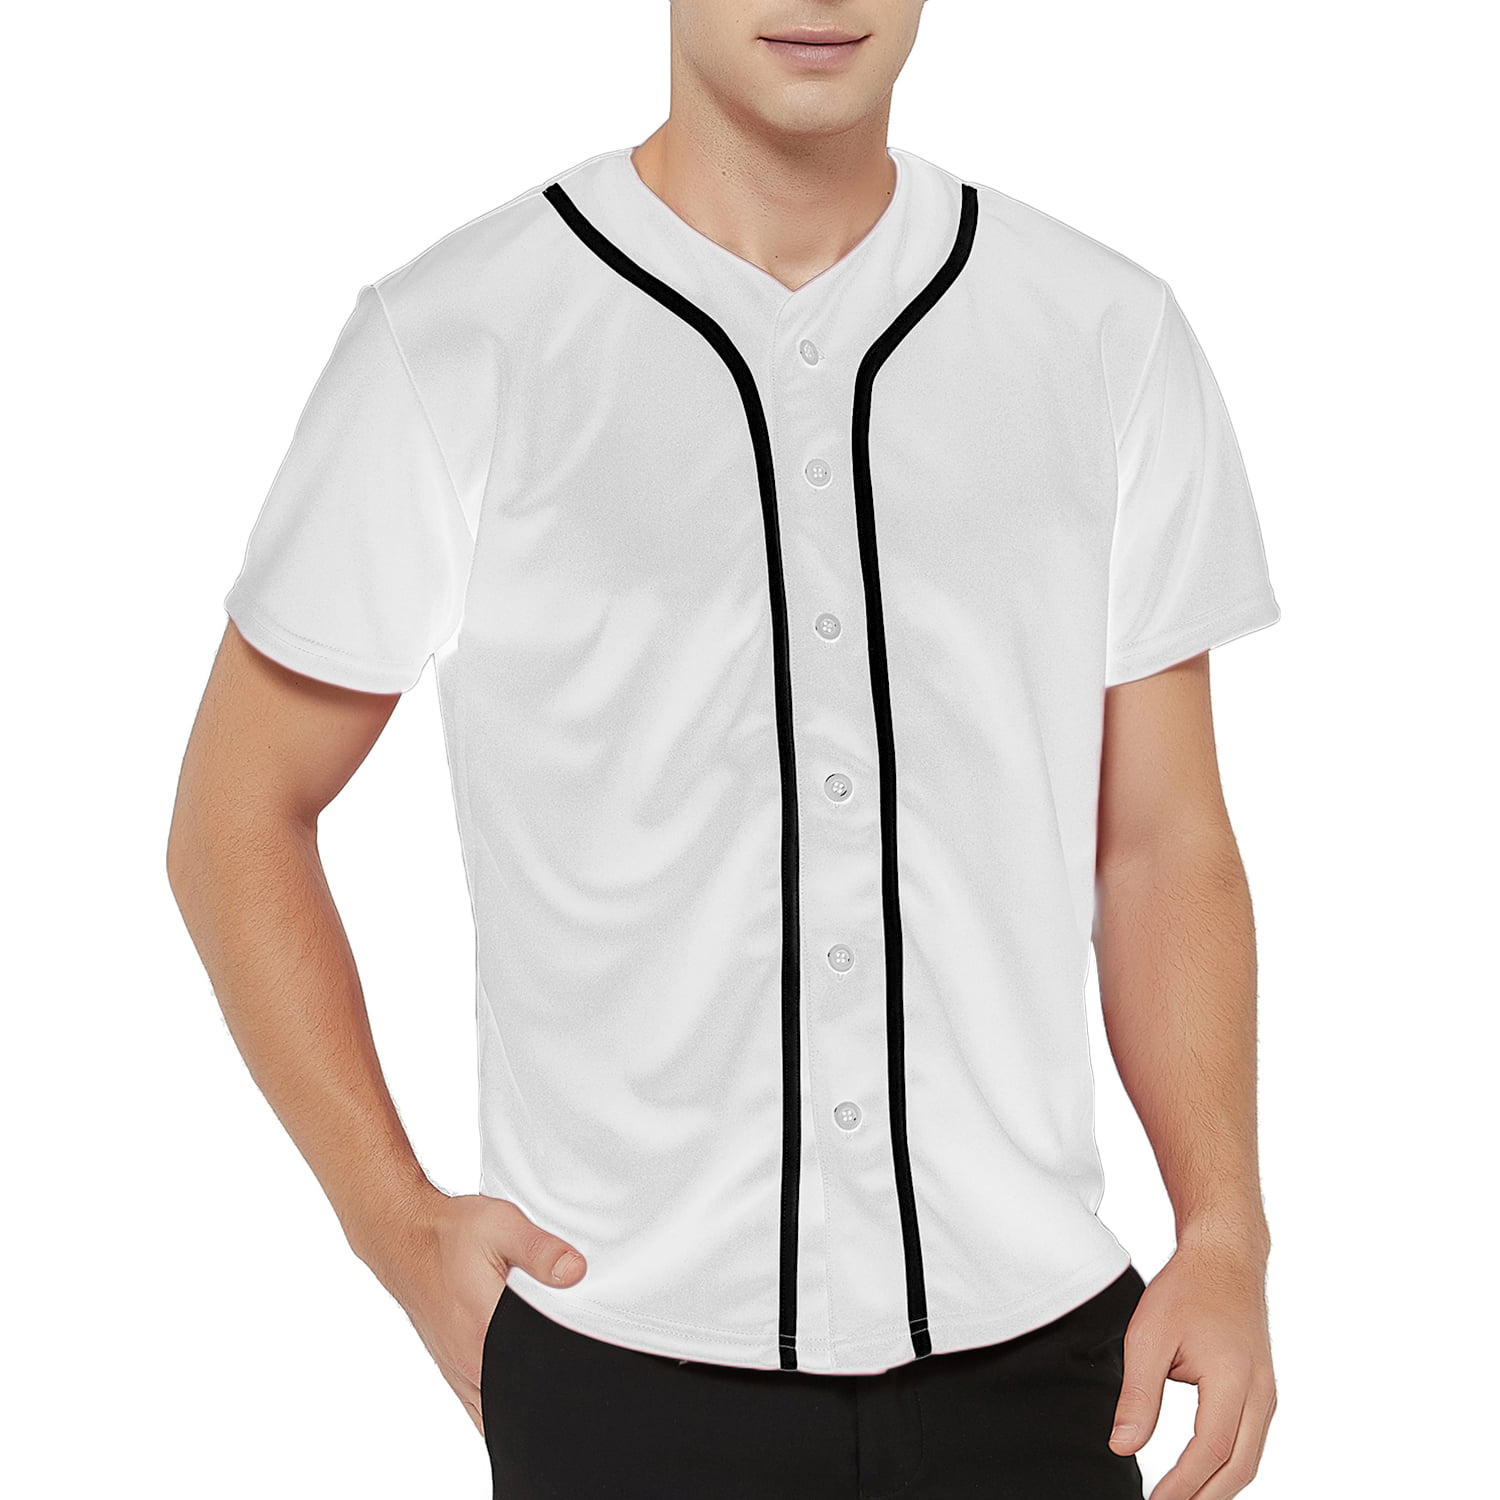 Toptie Men's Baseball Jersey Plain Button Down Shirts Team Sports  Uniforms-white black-L